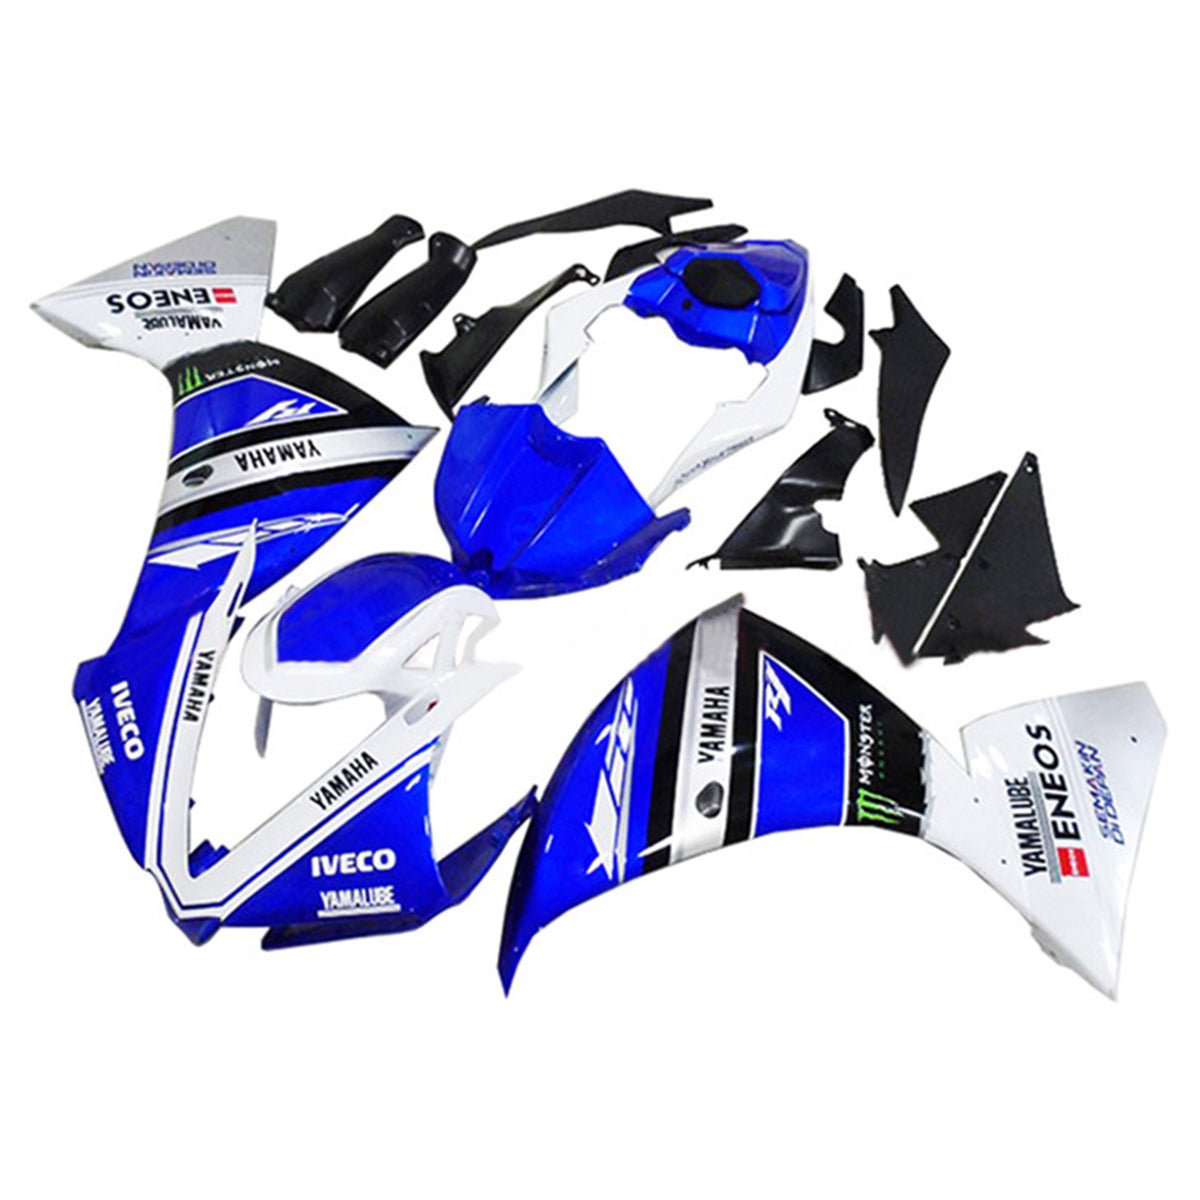 Amotopart 2009-2011 Yamaha YZF 1000 R1 blu e bianco con kit carenatura logo